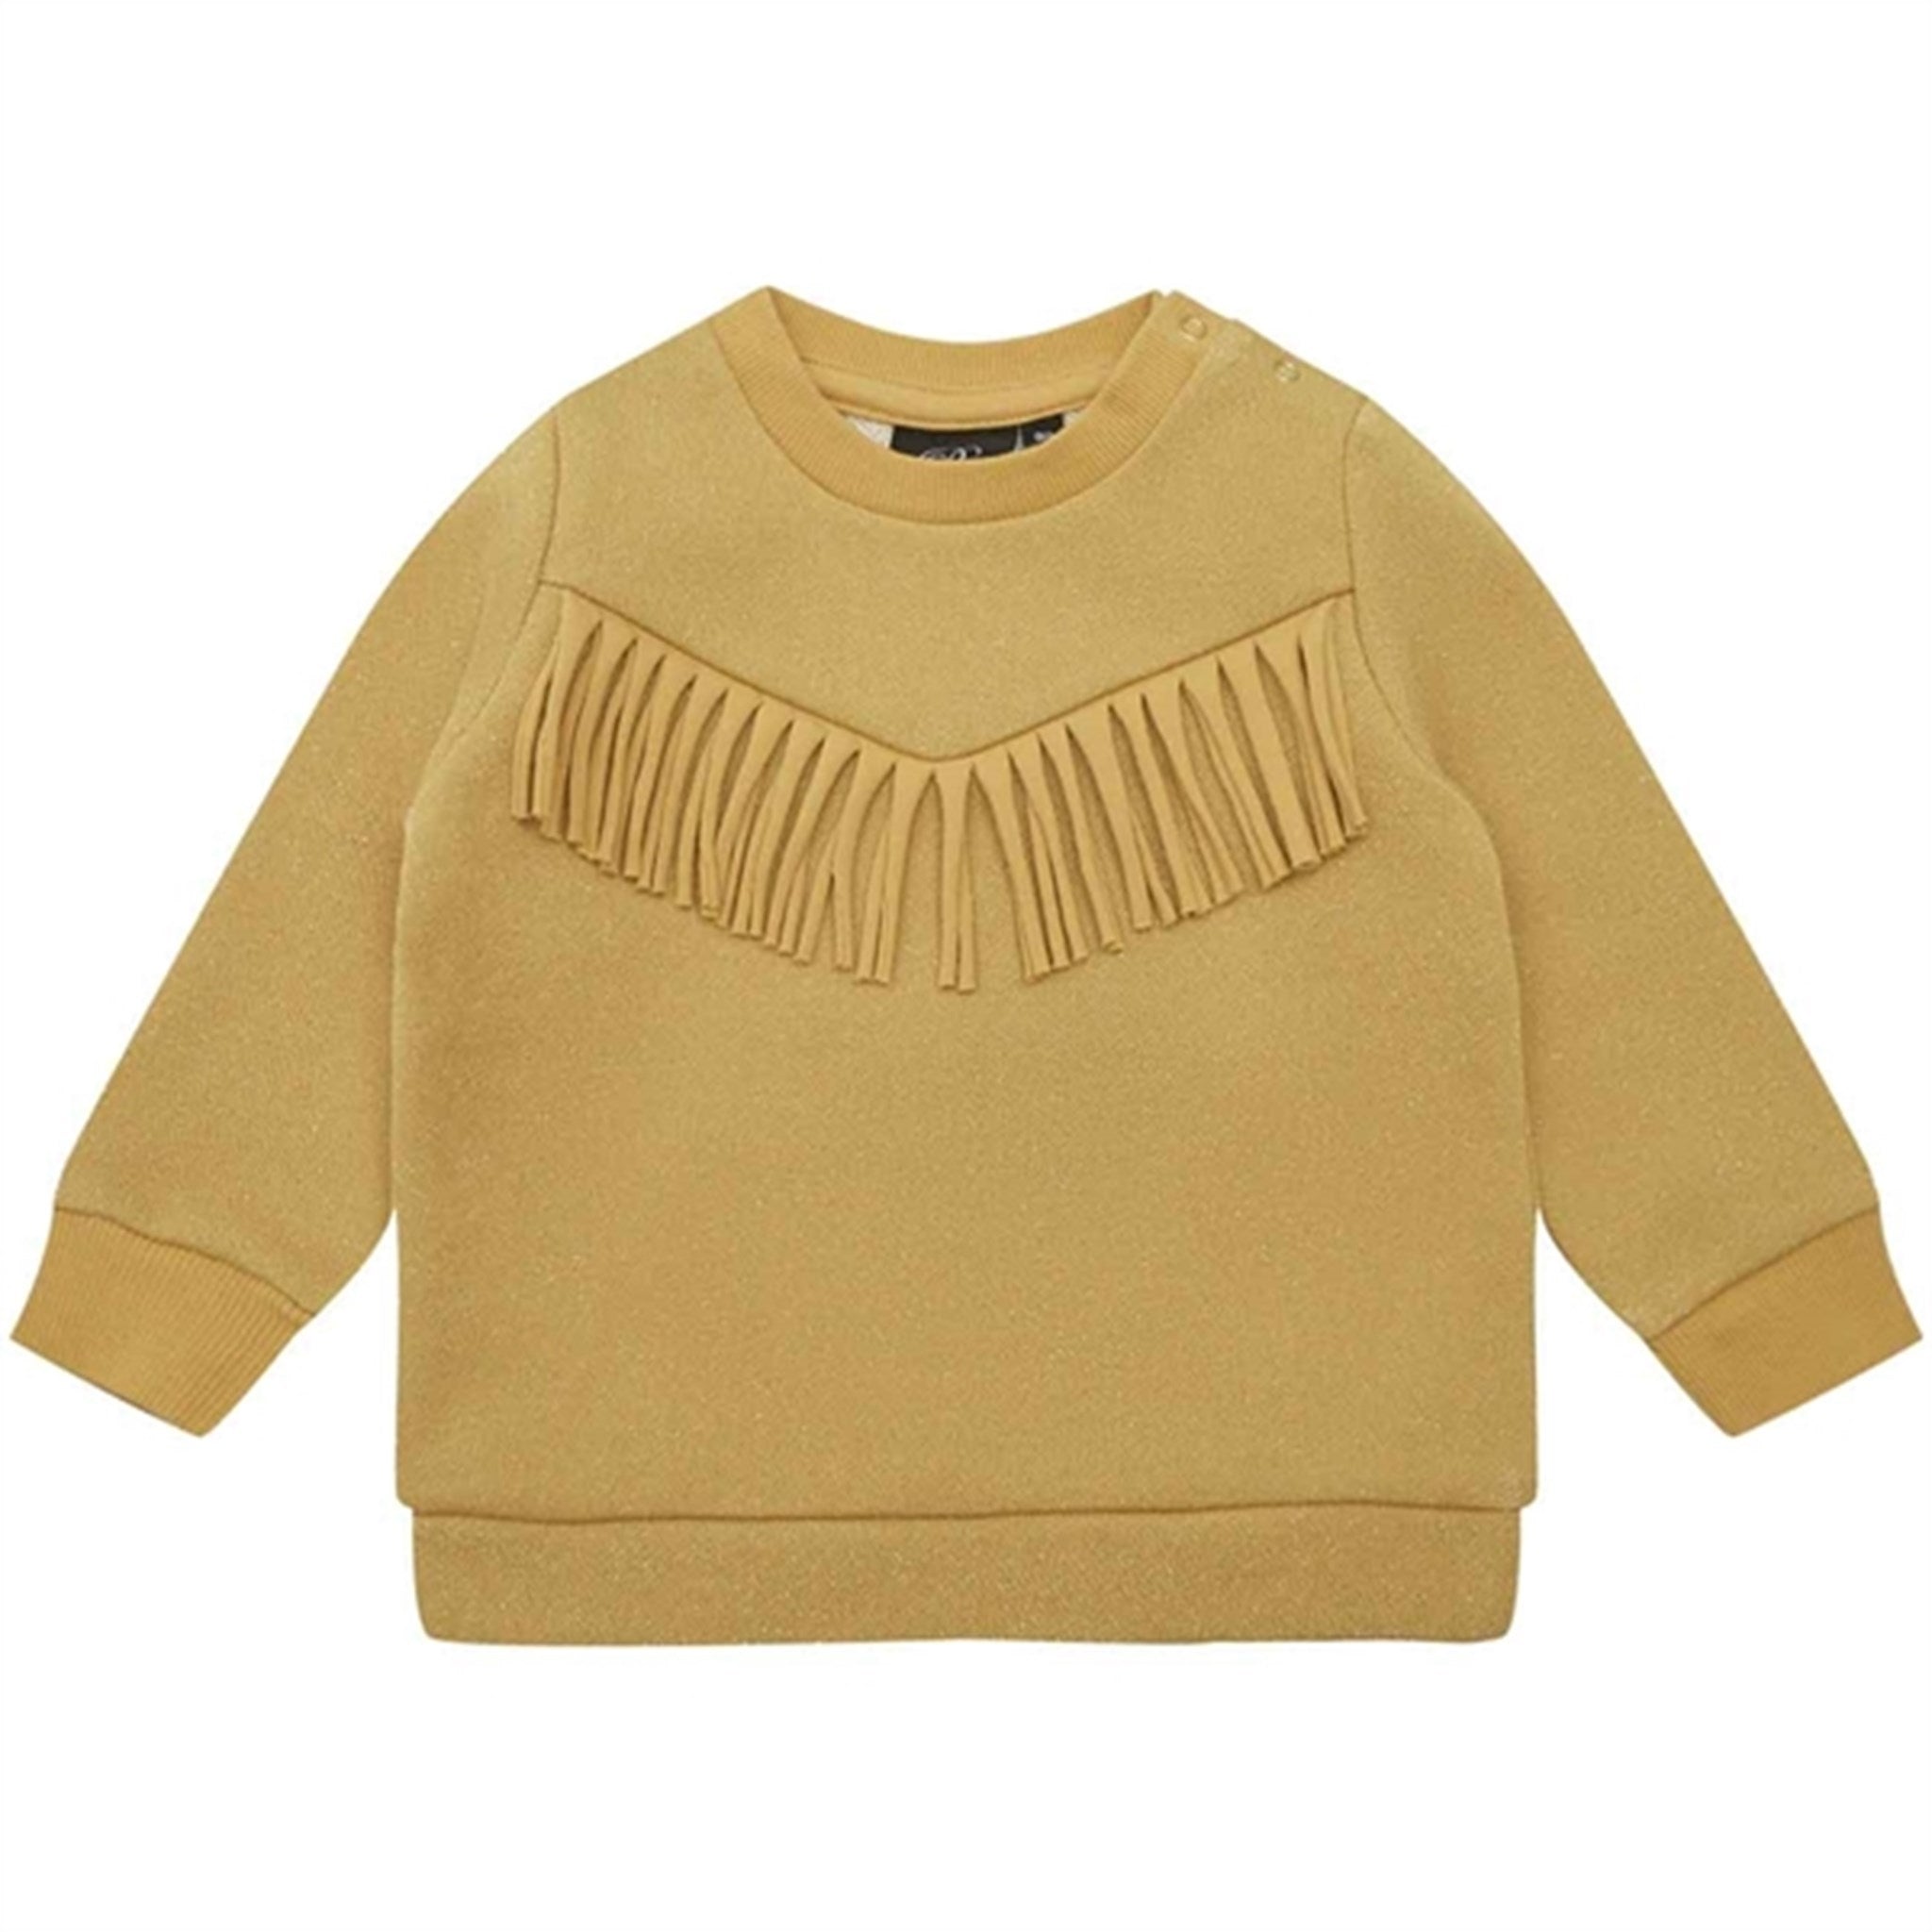 Sofie Schnoor Yellow Sweatshirt